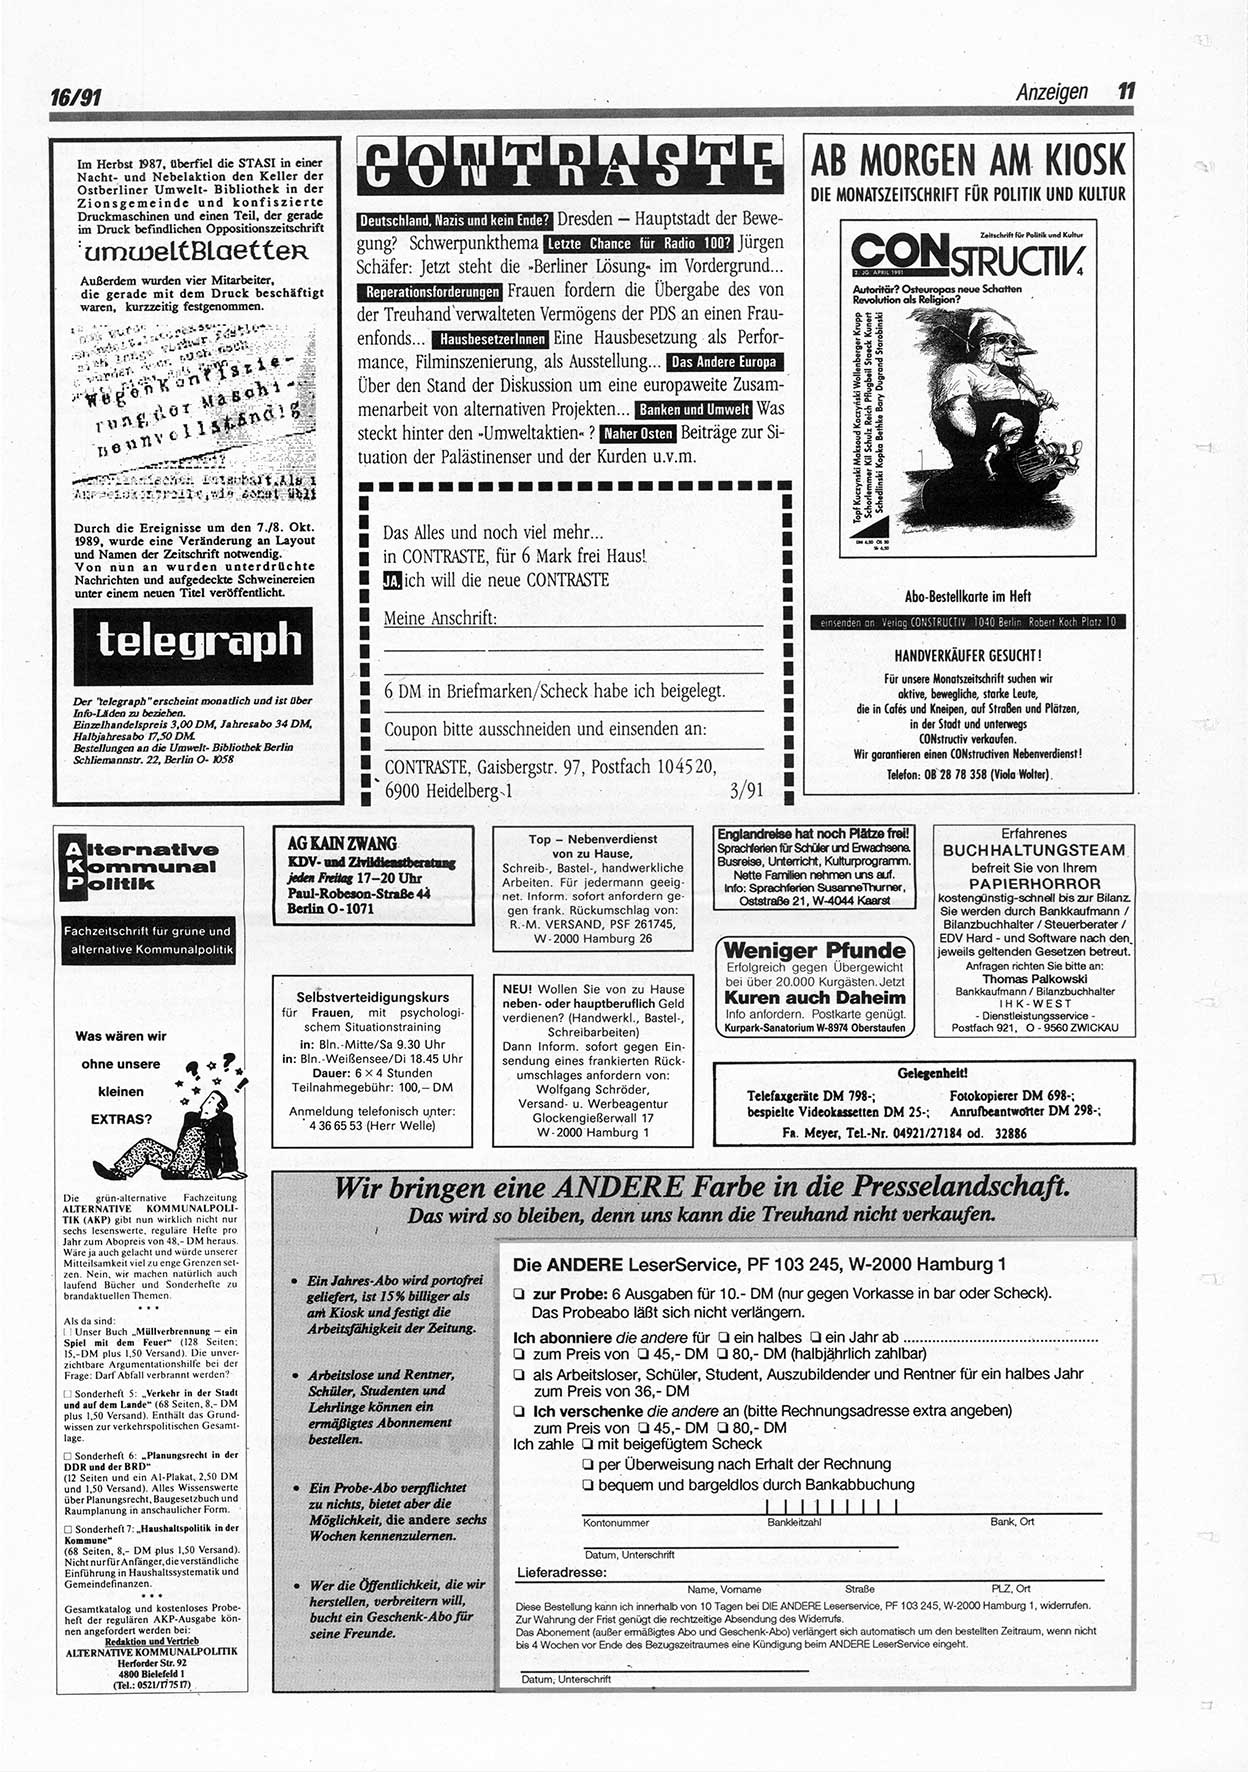 Die Andere, Unabhängige Wochenzeitung für Politik, Kultur und Kunst, Ausgabe 16 vom 17.4.1991, Seite 11 (And. W.-Zg. Ausg. 16 1991, S. 11)